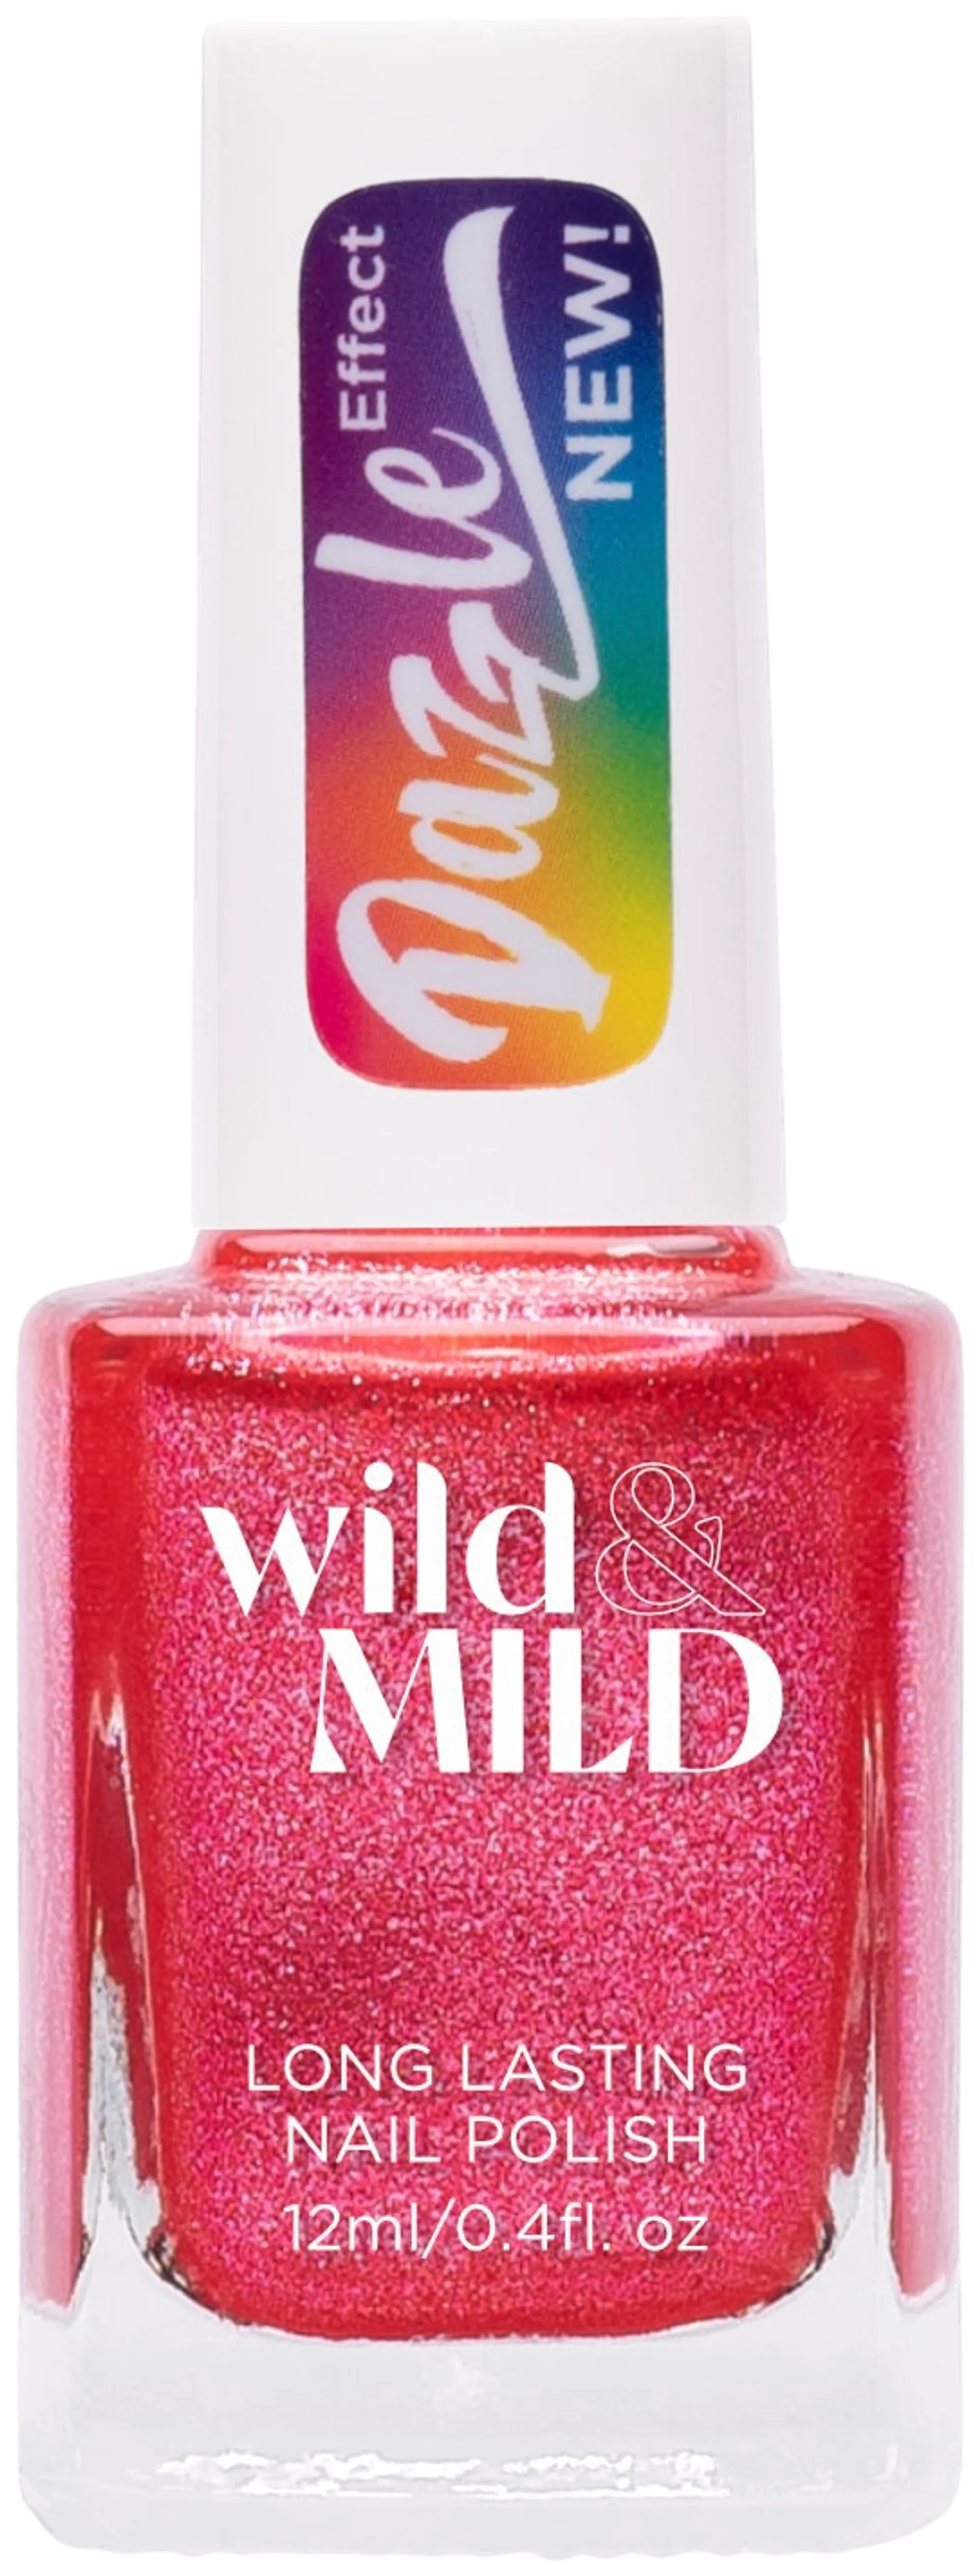 Wild&Mild Dazzle Effect nail polish DA05 Wicked Love 12 ml